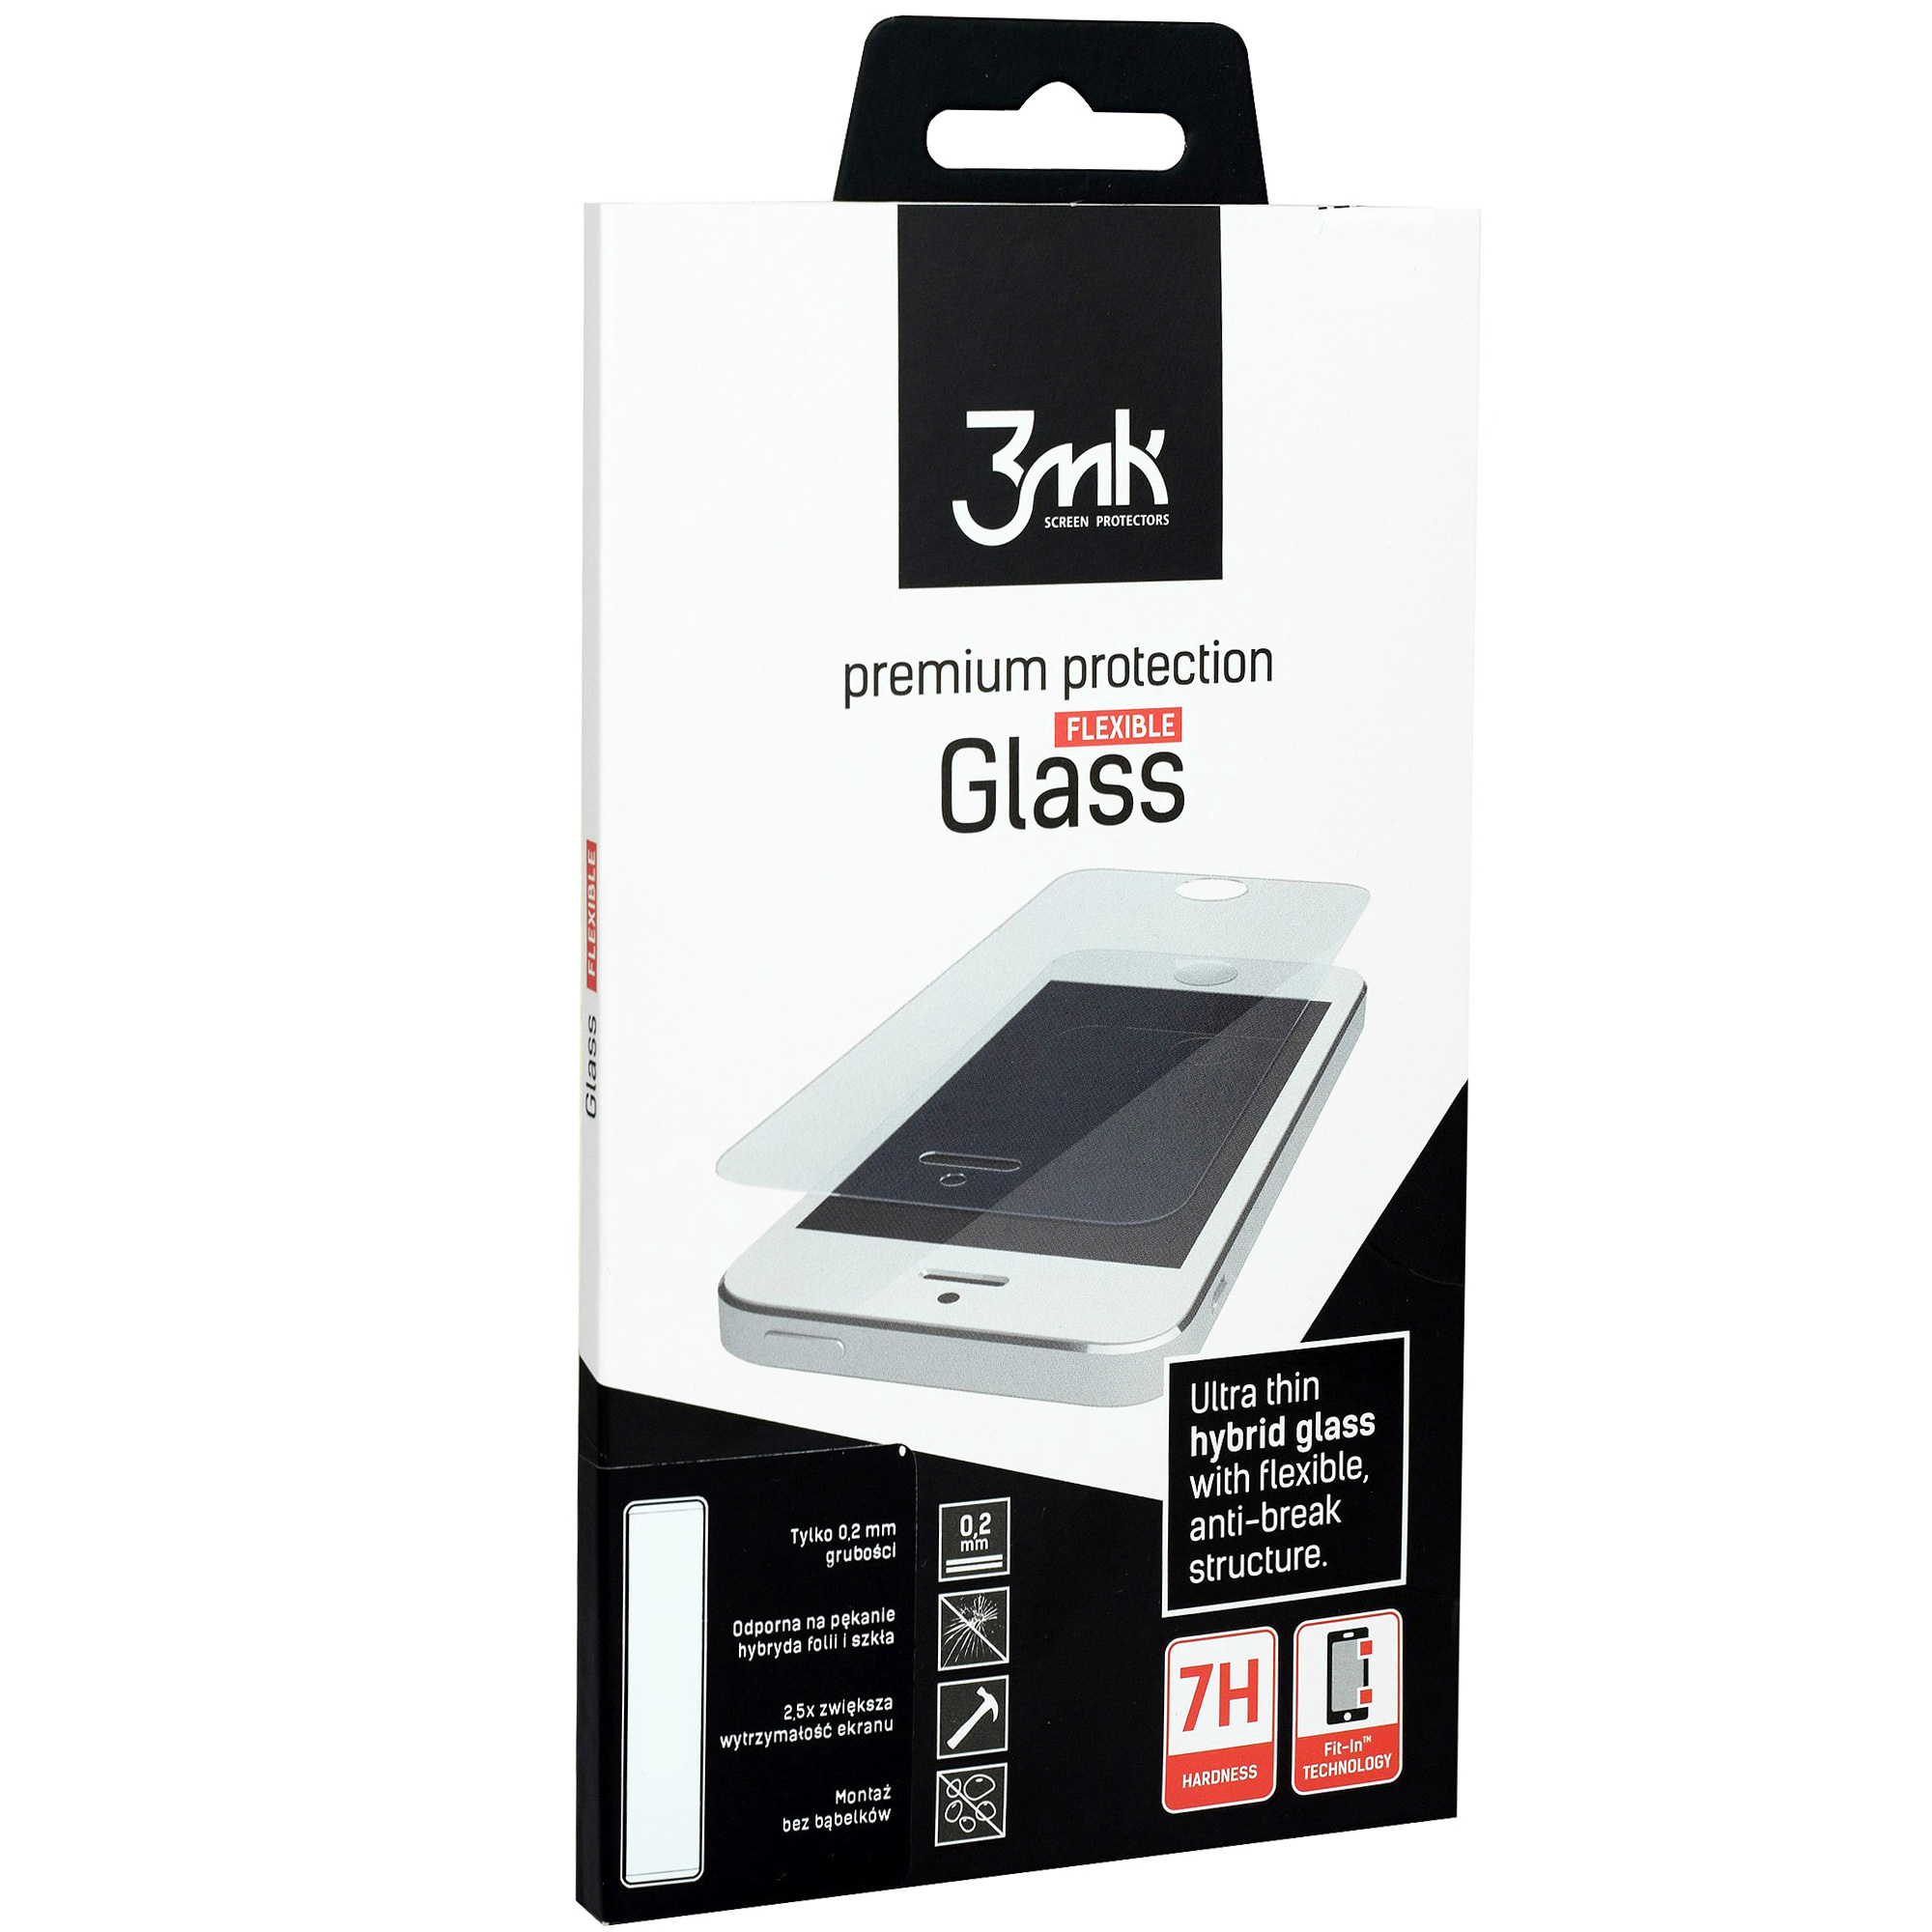 Szkło hybrydowe 3mk Flexible Glass dla iPhone Xs